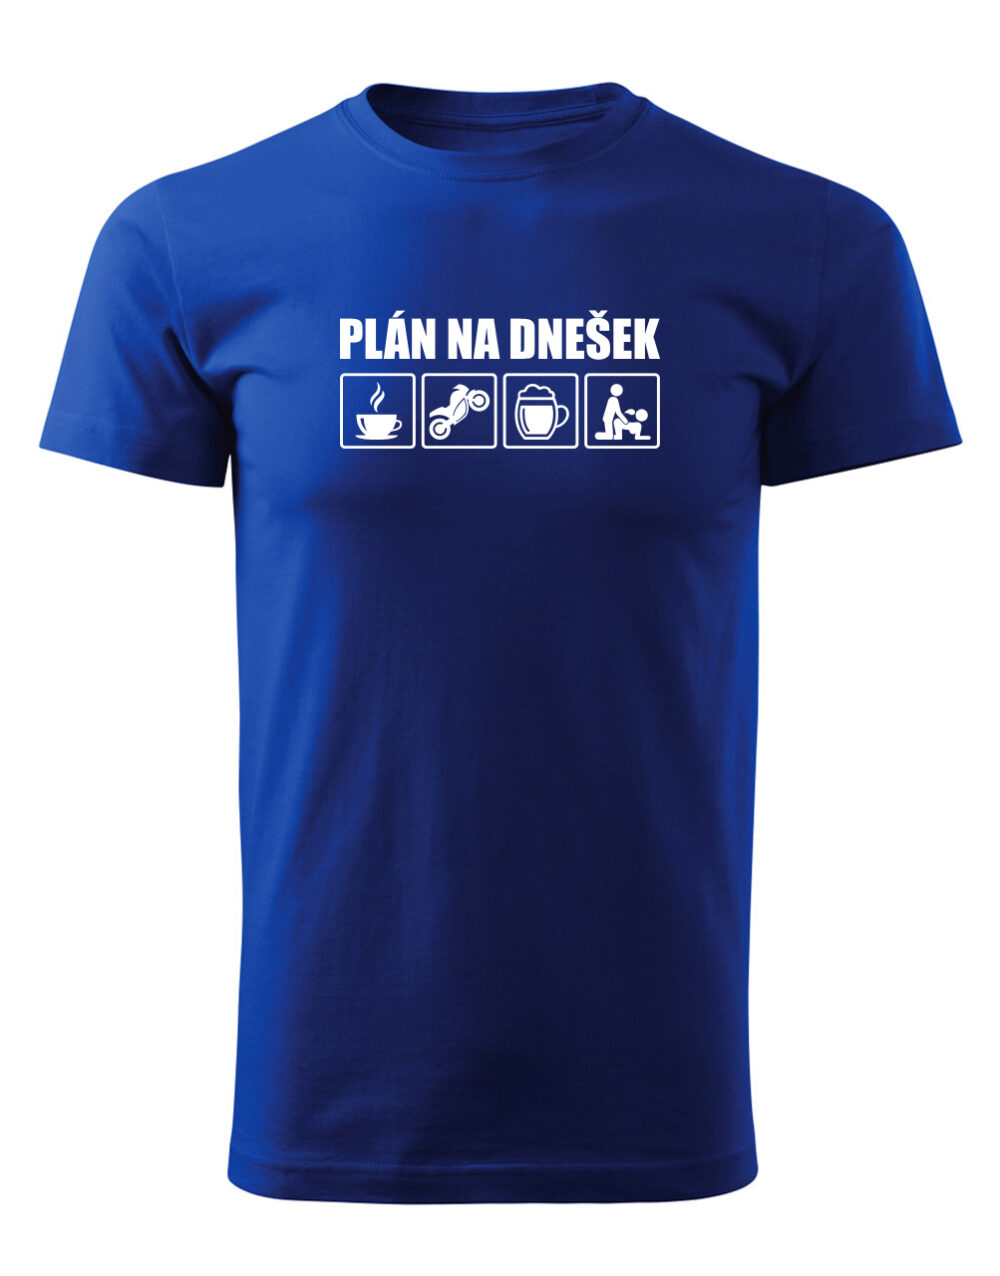 Pánské tričko s potiskem Plán na dnešek královská modrá